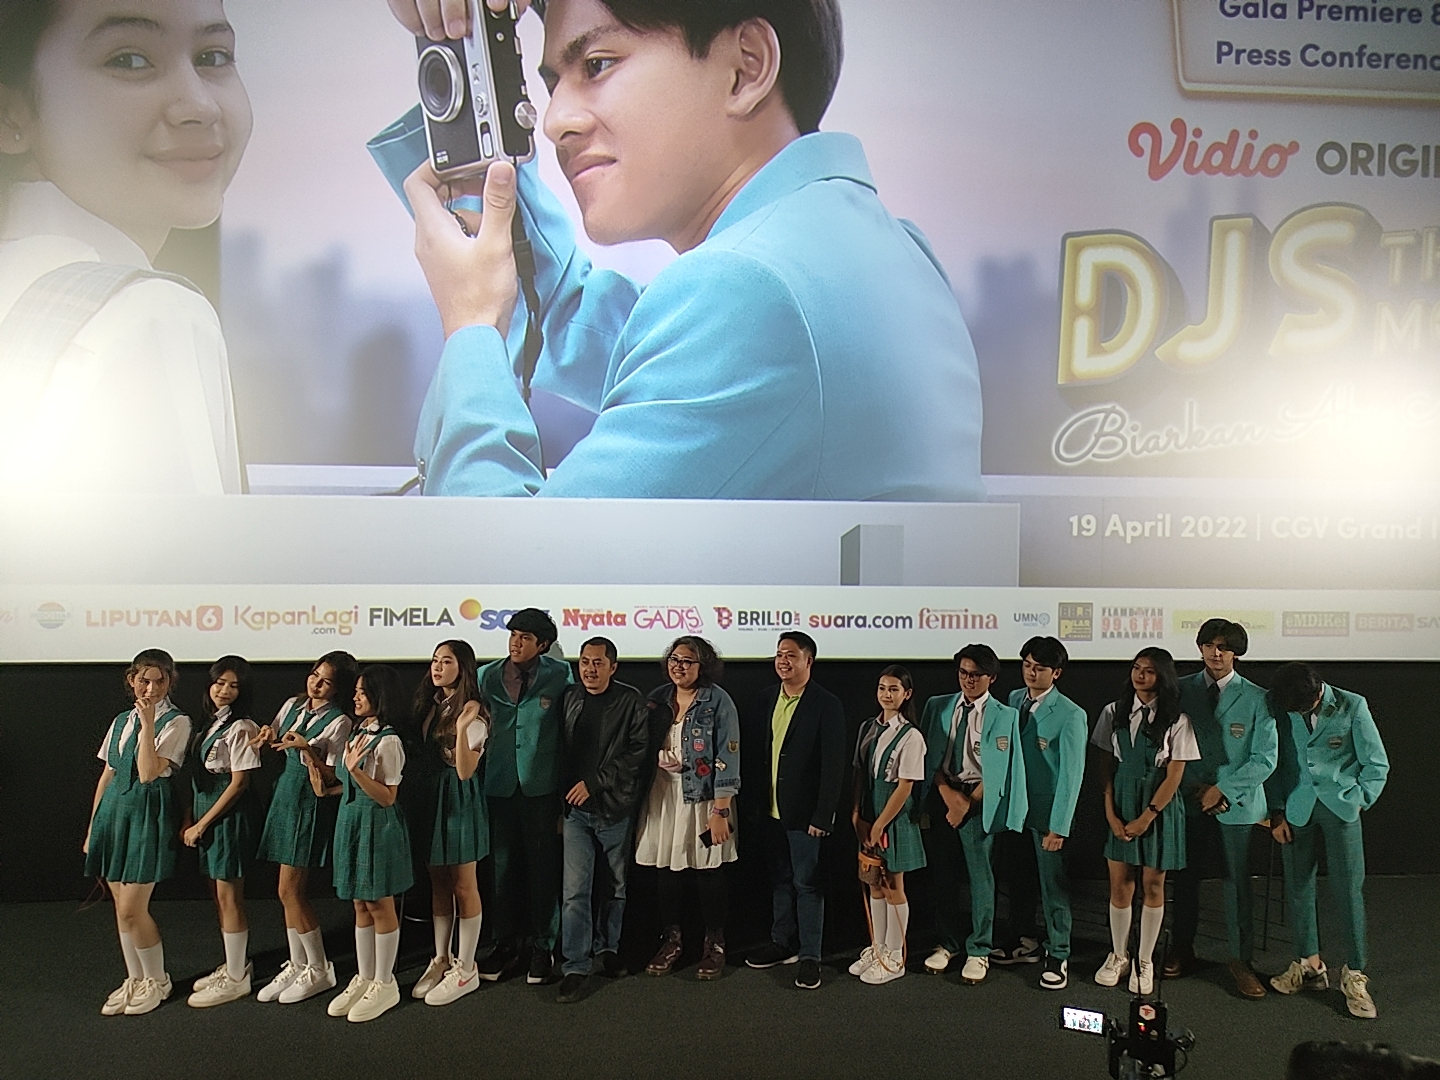 Film Original Perdana Vidio, DJS The Movie: “Biarkan Aku Menari” Segera tayang 21 April 2022